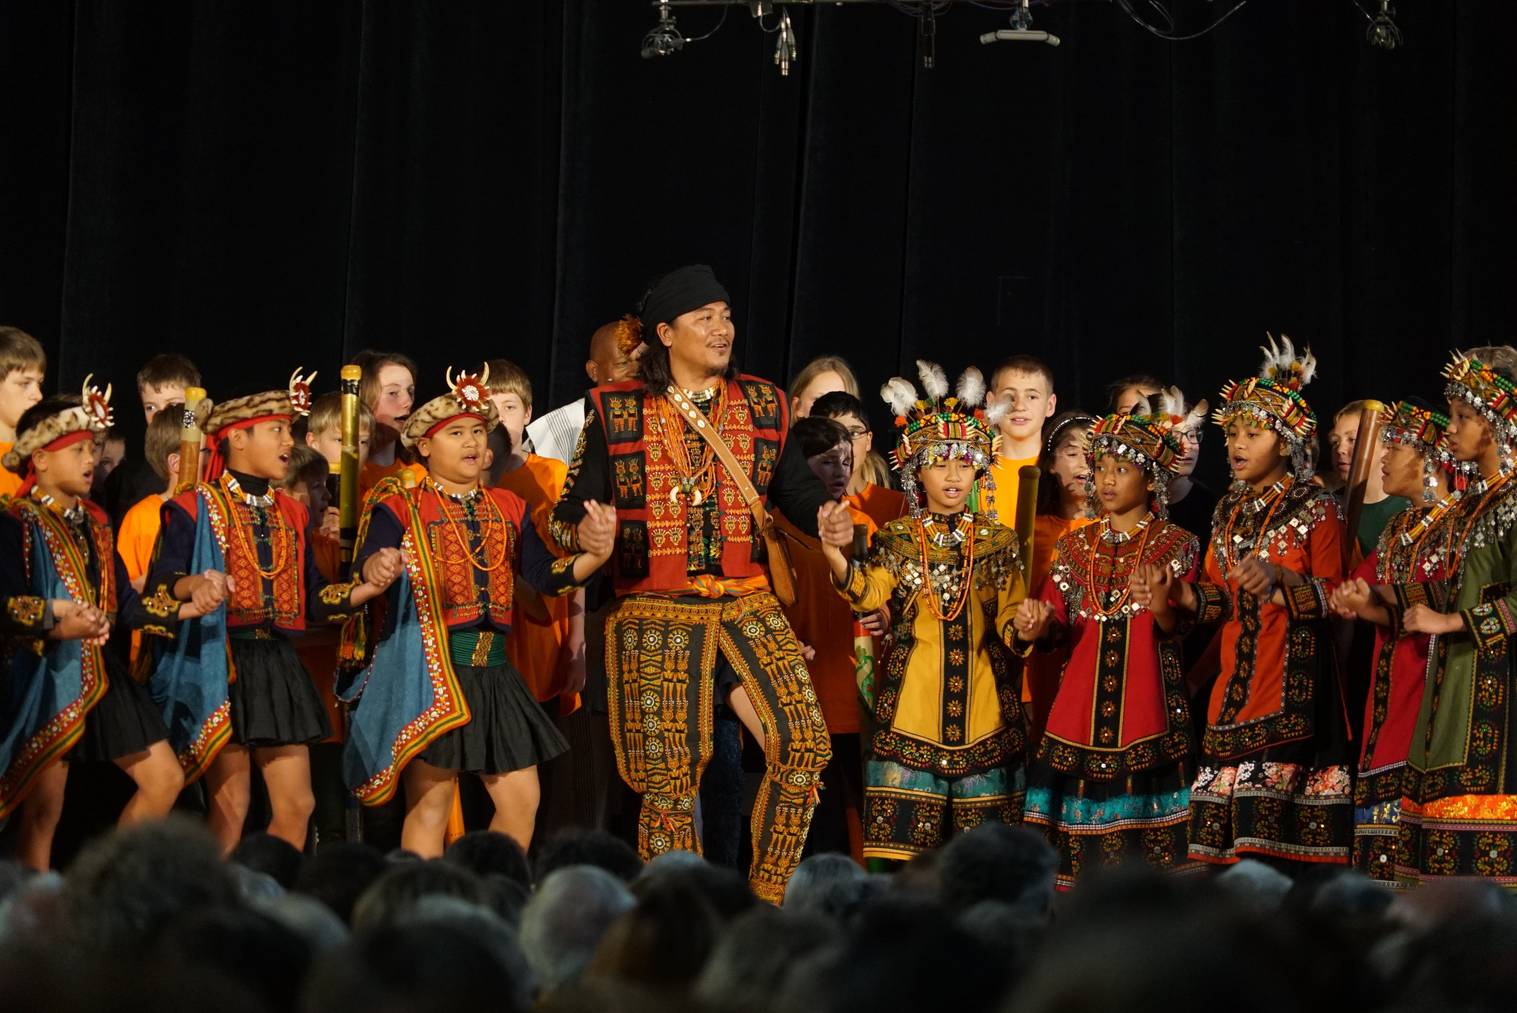 Auftritt des Arican Children's Choir am Klangfestival, ein Schulprojekt der Primarschule Alt St.Johann. (Bild: zVg)